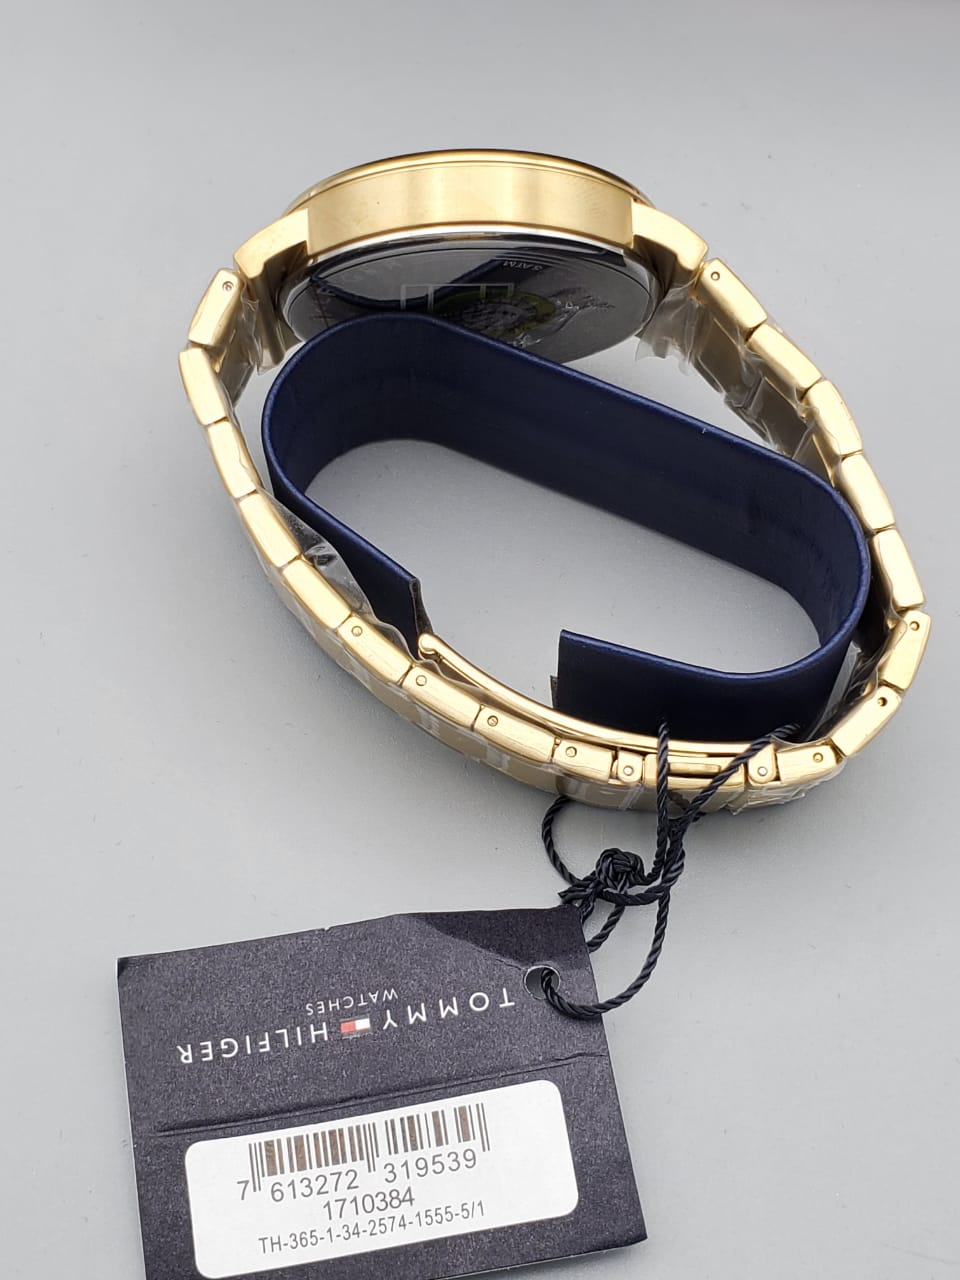 Tommy Hilfiger Men's Quartz Case and Bracelet Dressy Watch, Color: Gold Plated (Model: 1710384)